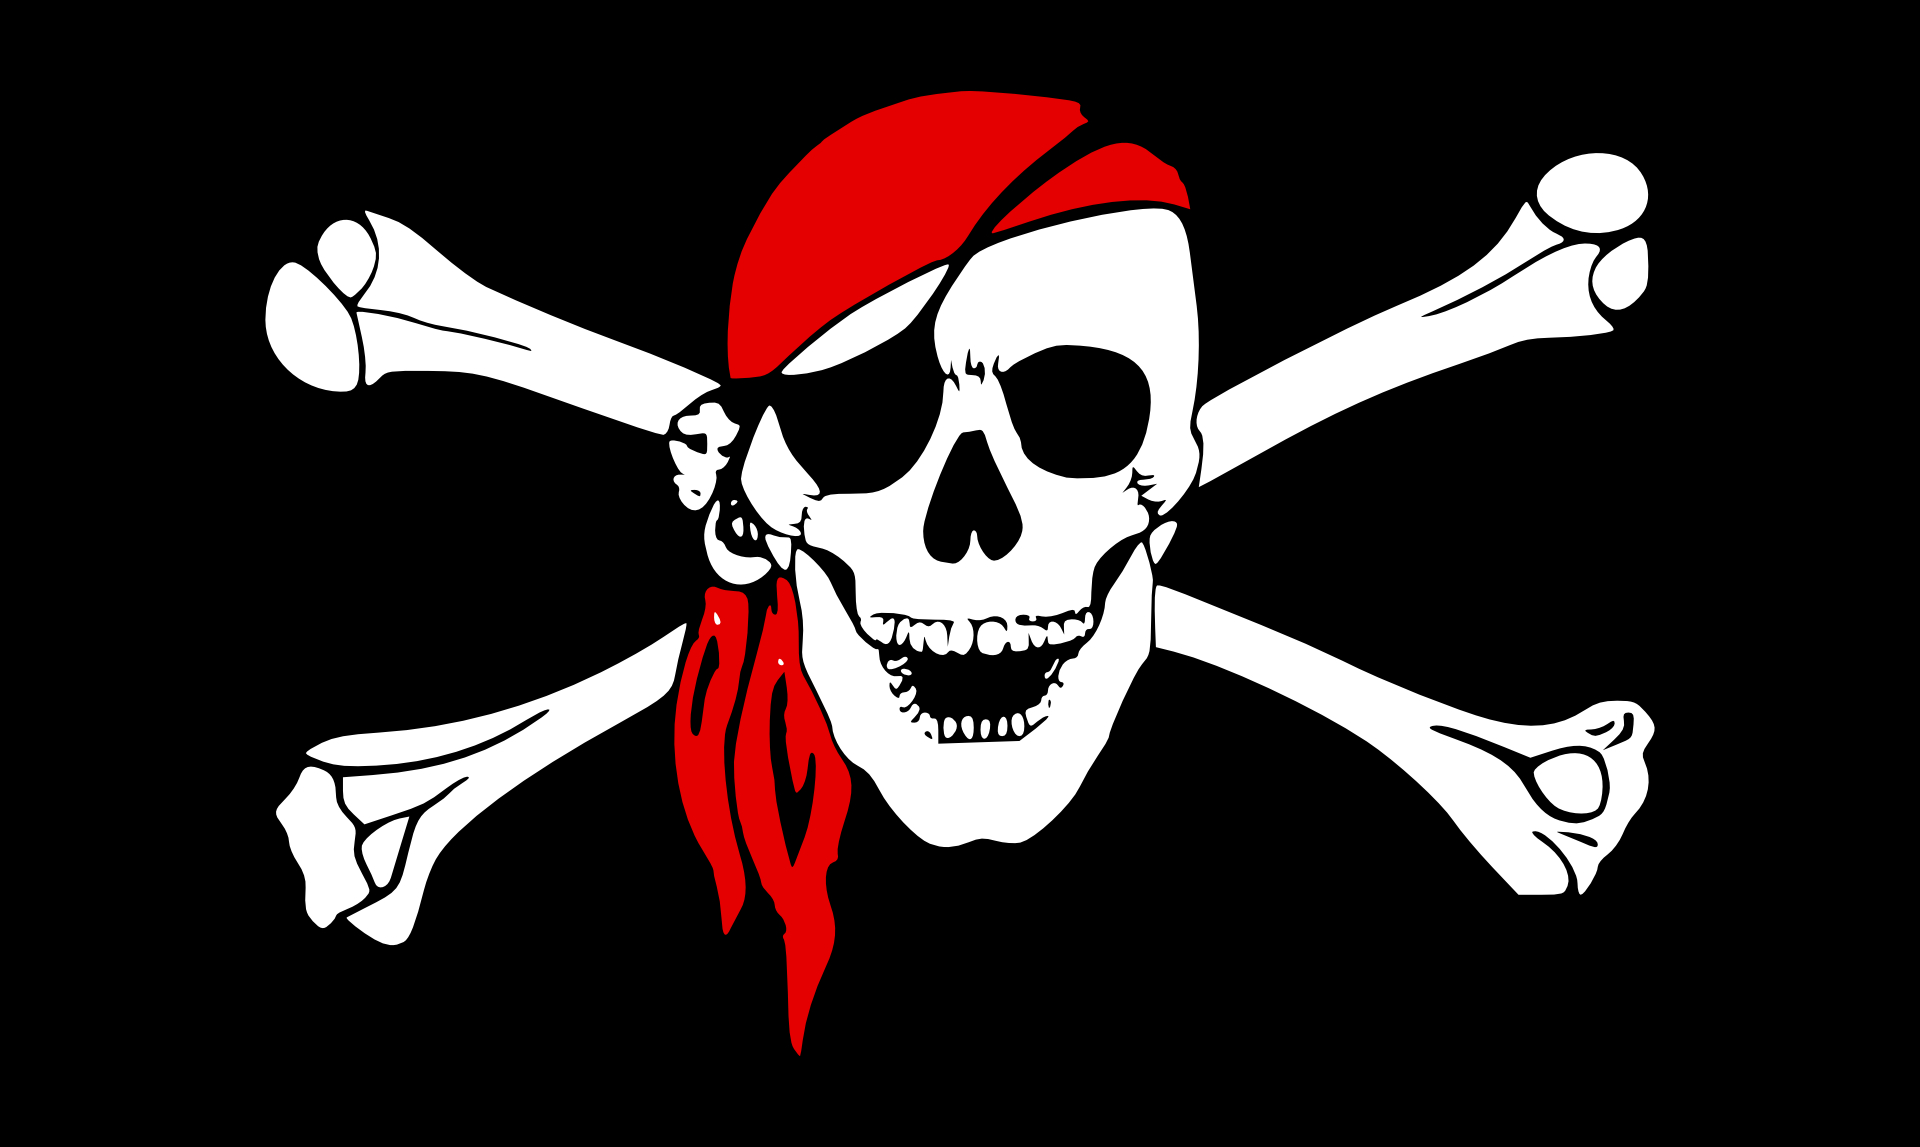 Pirate flag,skull vector